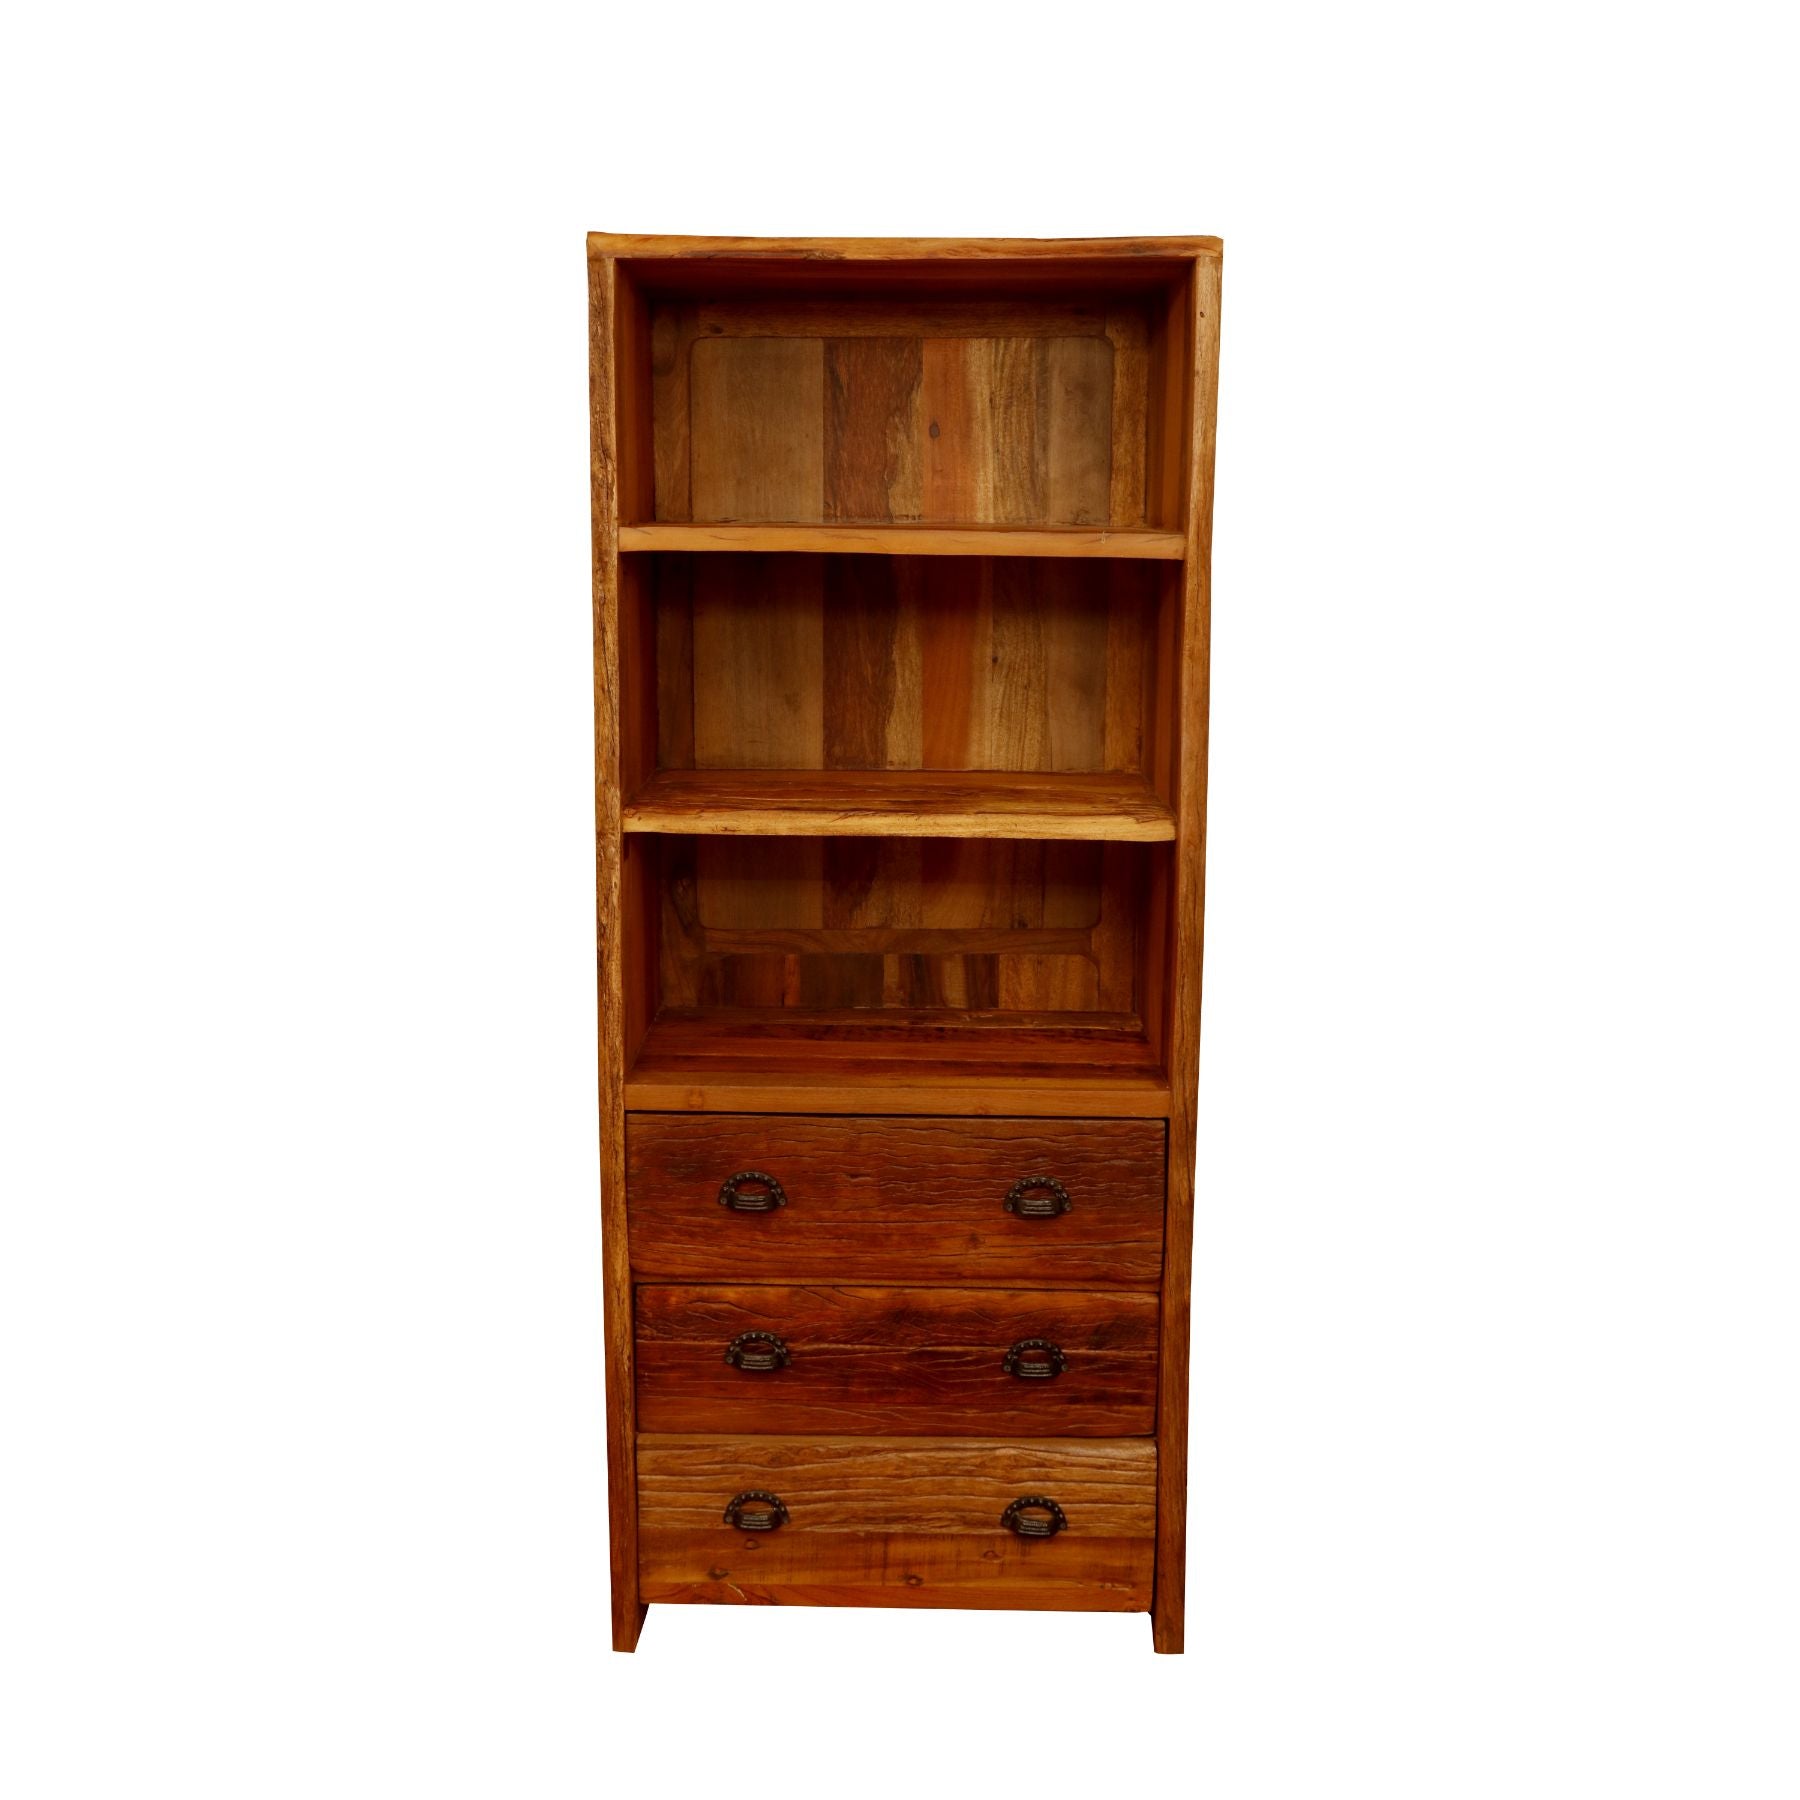 Classic Sturdy Reclaimed wood Bookshelf Book Rack